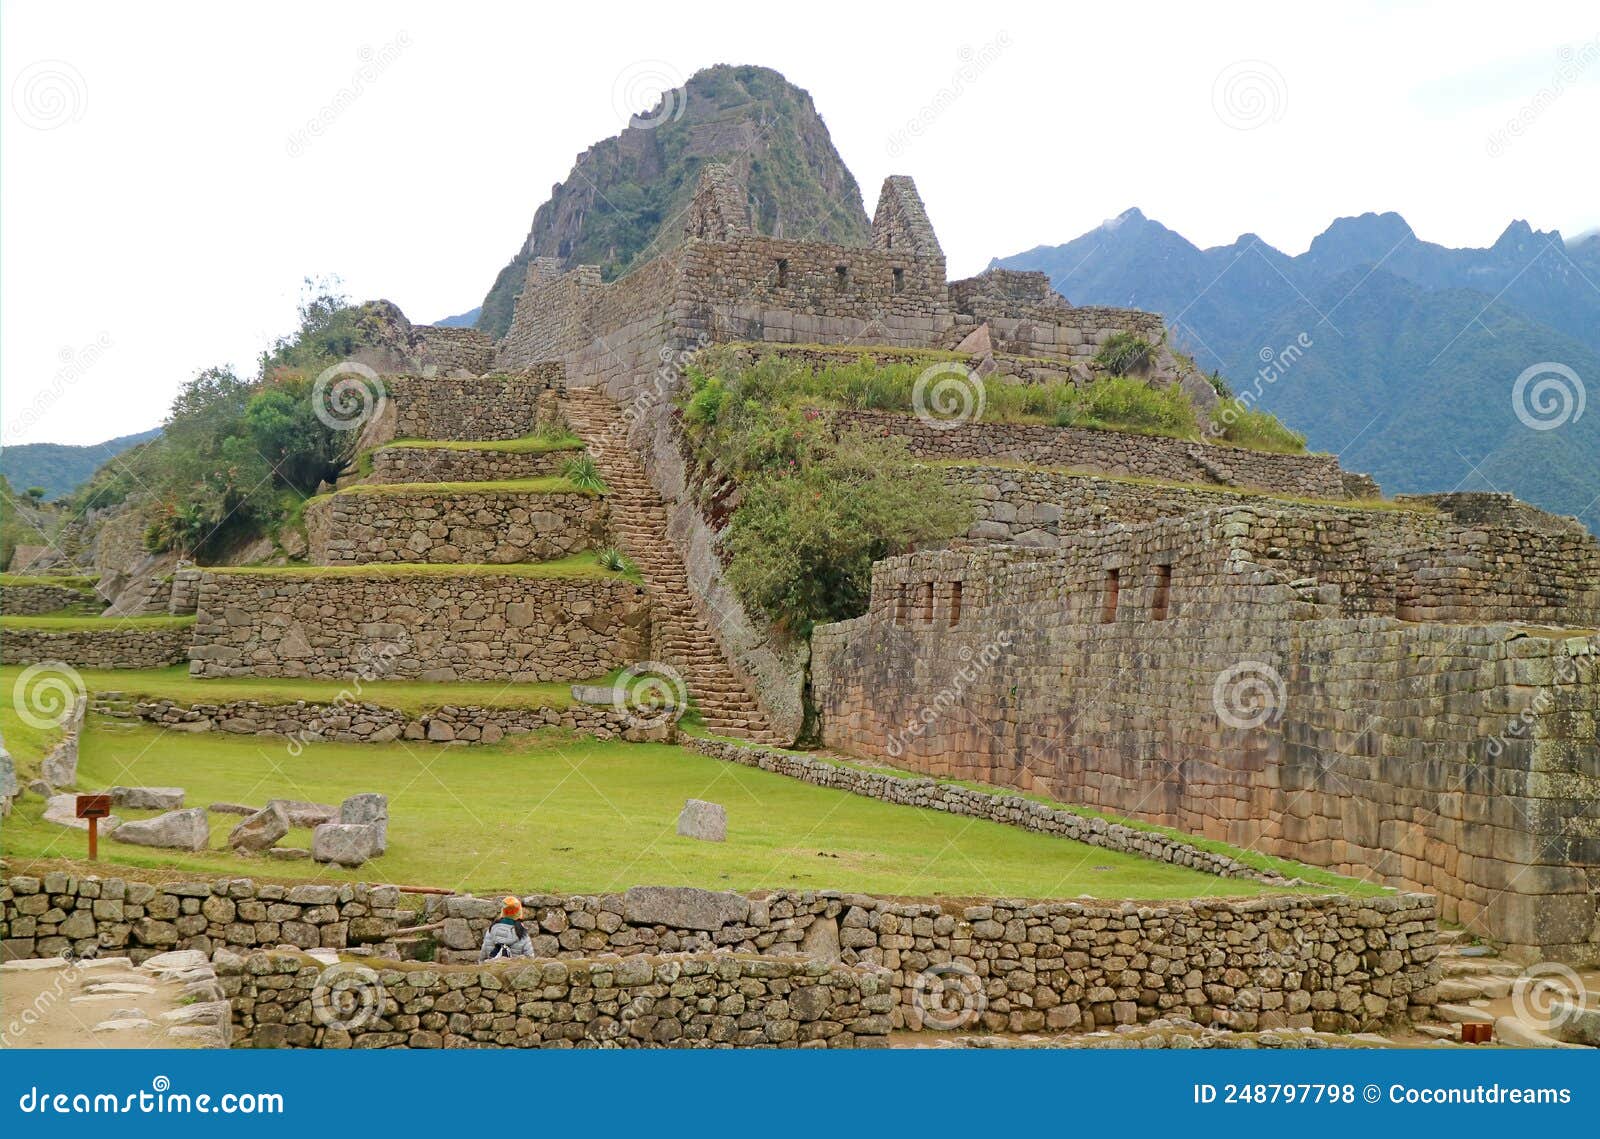 https://thumbs.dreamstime.com/z/fantastique-ancienne-inca-ruines-de-machu-picchu-citadelle-nouvelle-sept-merveille-du-site-mondial-dans-la-r%C3%A9gion-cusco-au-p%C3%A9rou-248797798.jpg